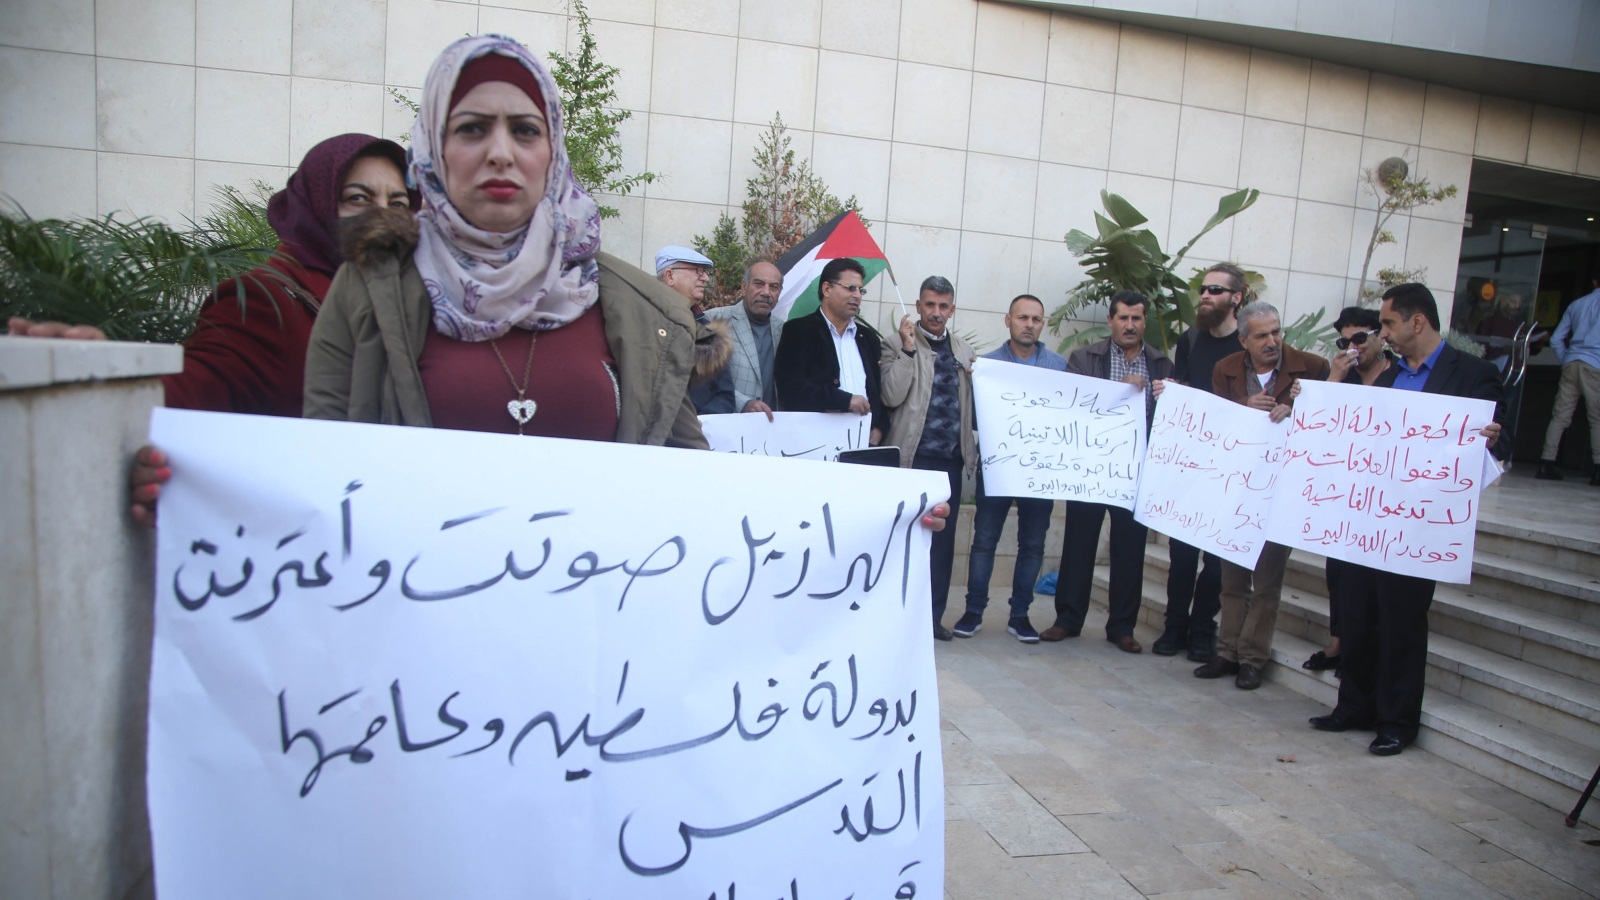 المتظاهرون رفعوا لافتات تؤكد على التمسك بالقدس عاصمة للدولة الفلسطينية (الأناضول)